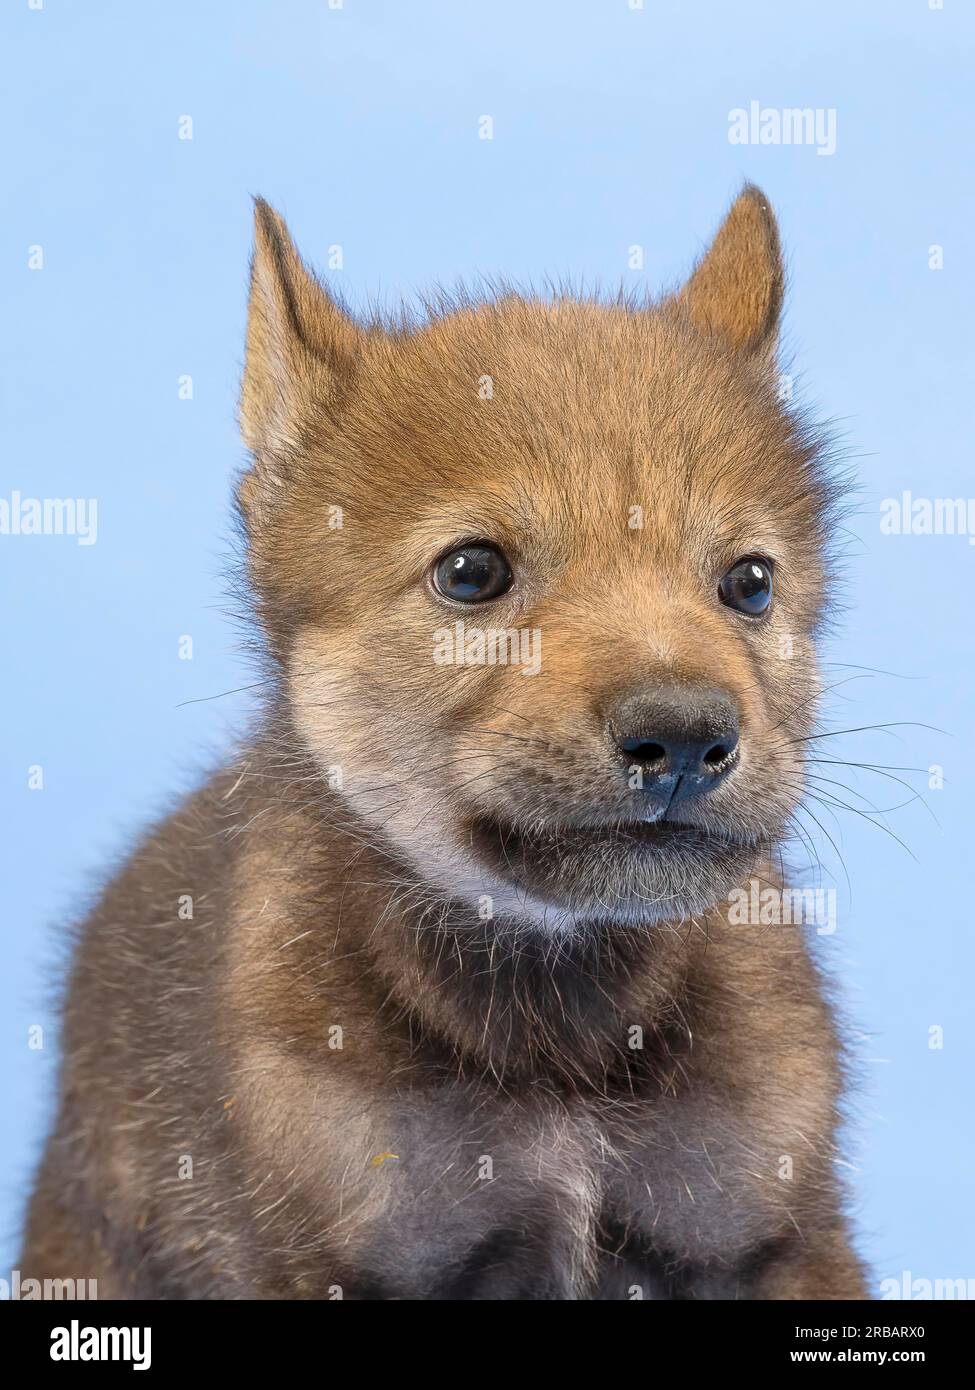 Lupo grigio europeo (Canis lupus lupus), ritratto animale, orecchie rilassate, cucciolo, giovane animale, giovane, prigioniero, 3,5 settimane, ripresa in studio, sfondo blu Foto Stock